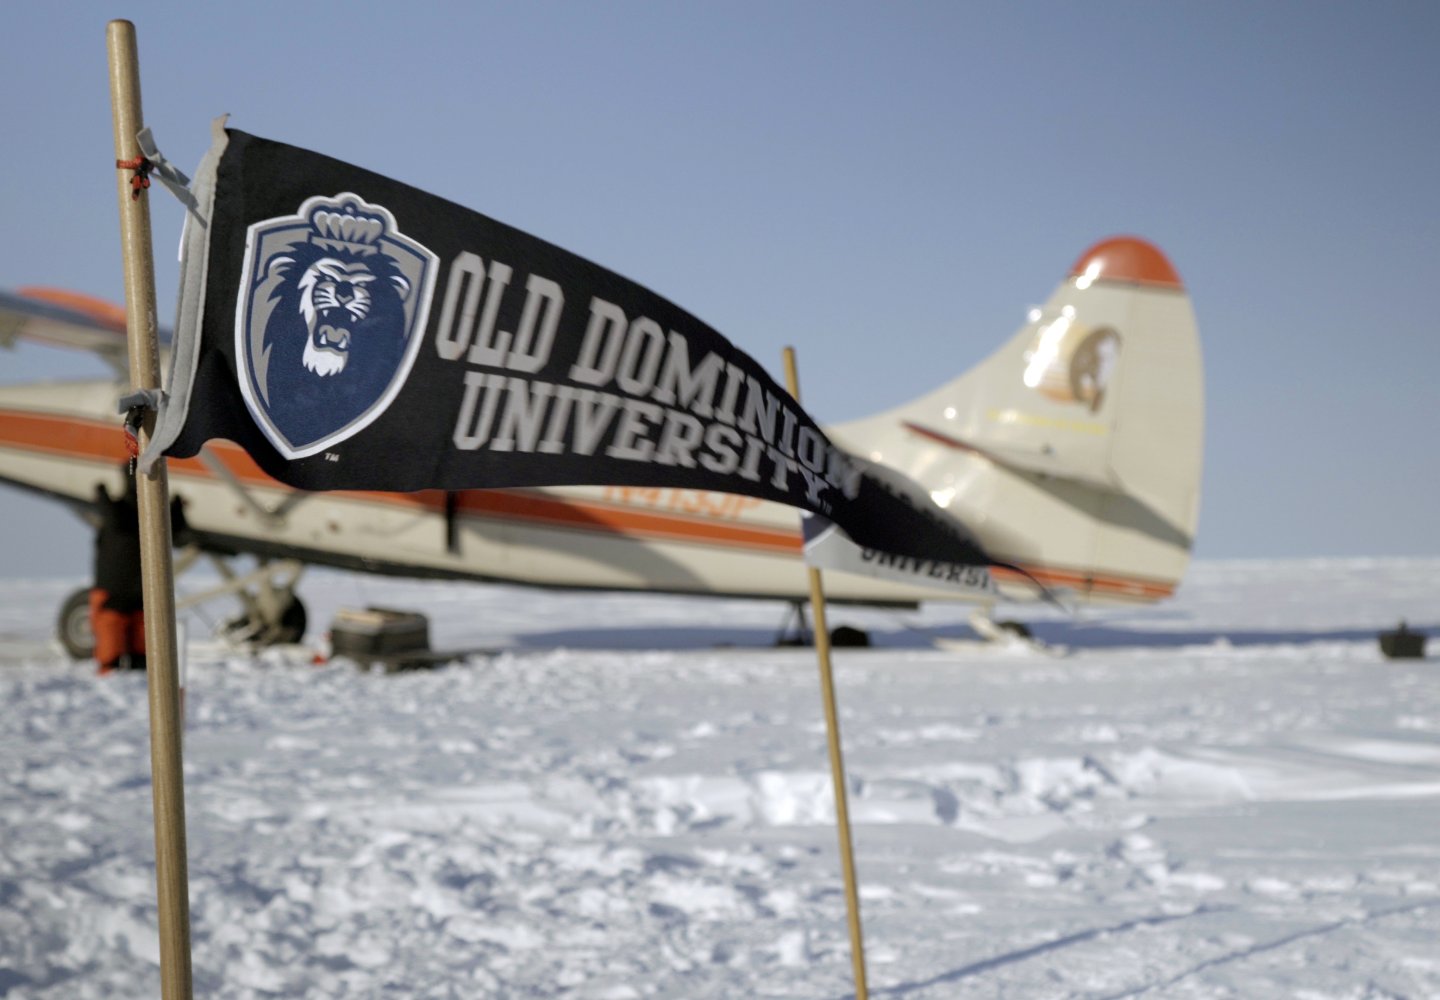 ODU Flag waving in Artic